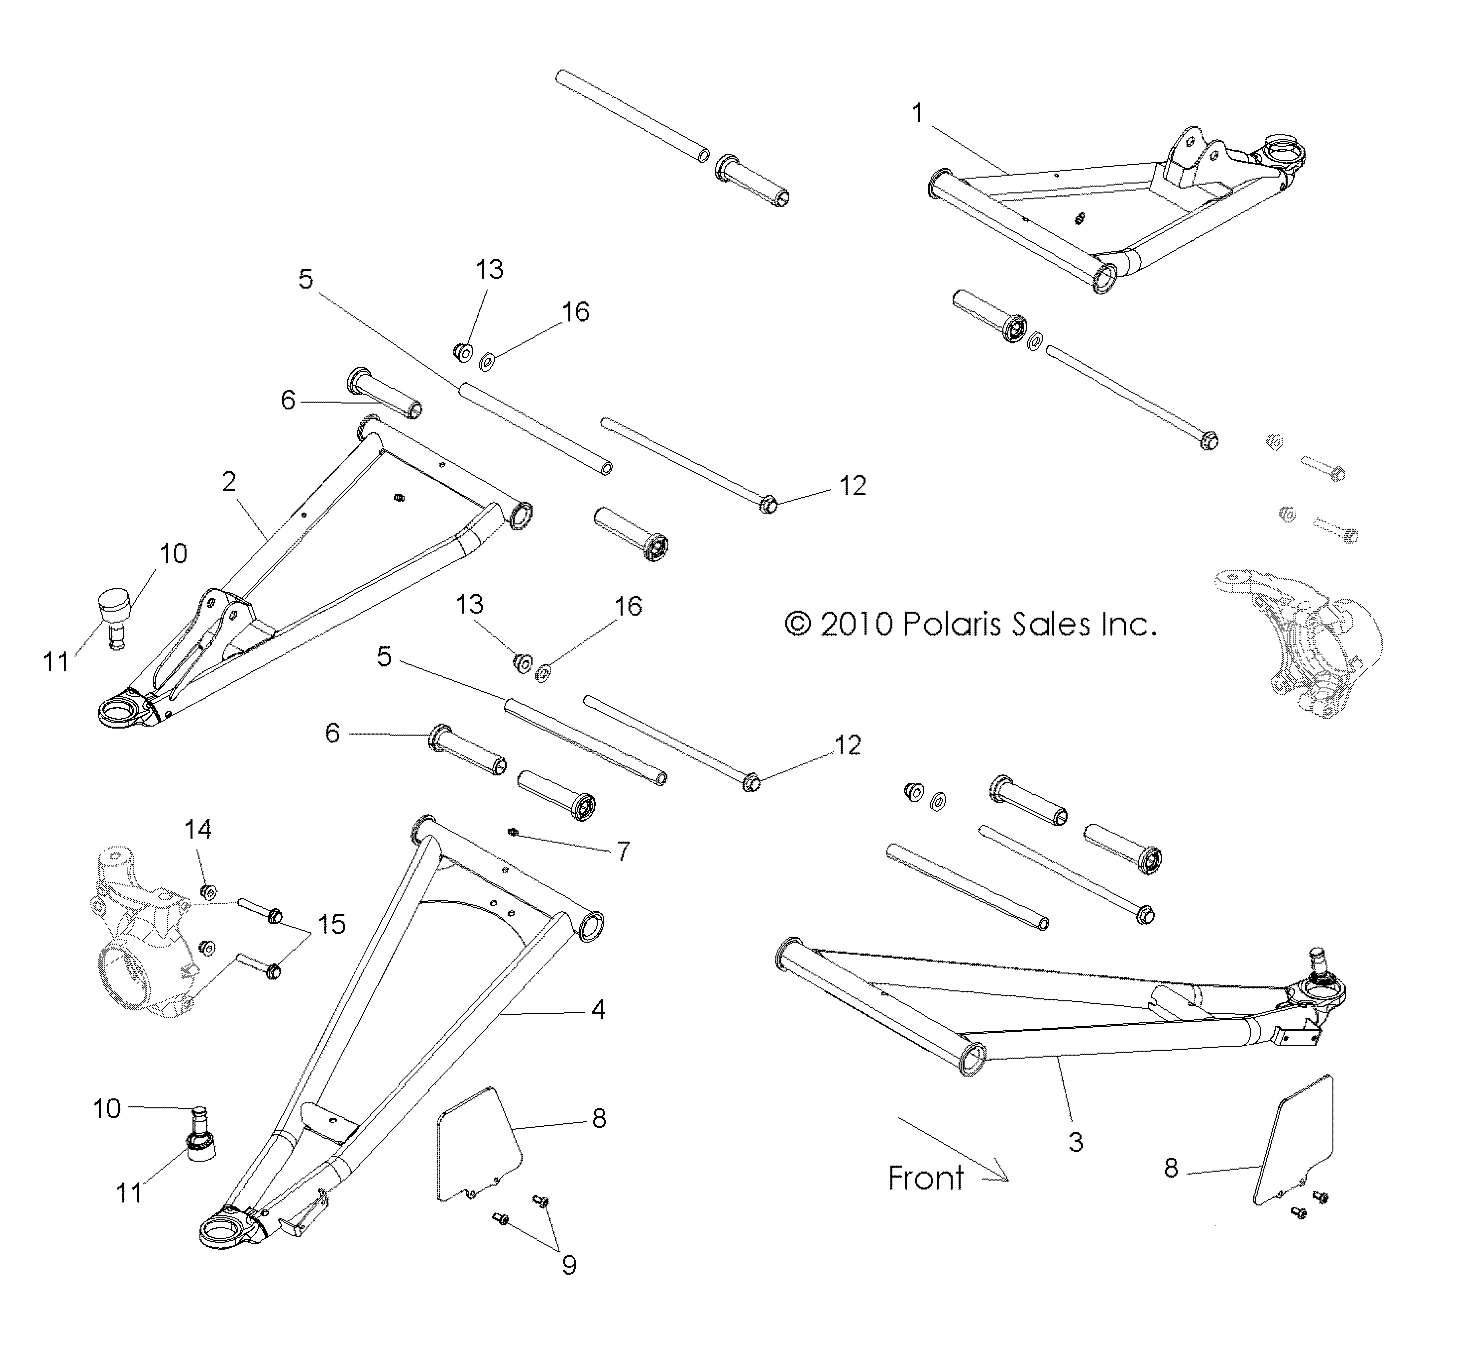 Foto diagrama Polaris que contem a peça 1017575-458